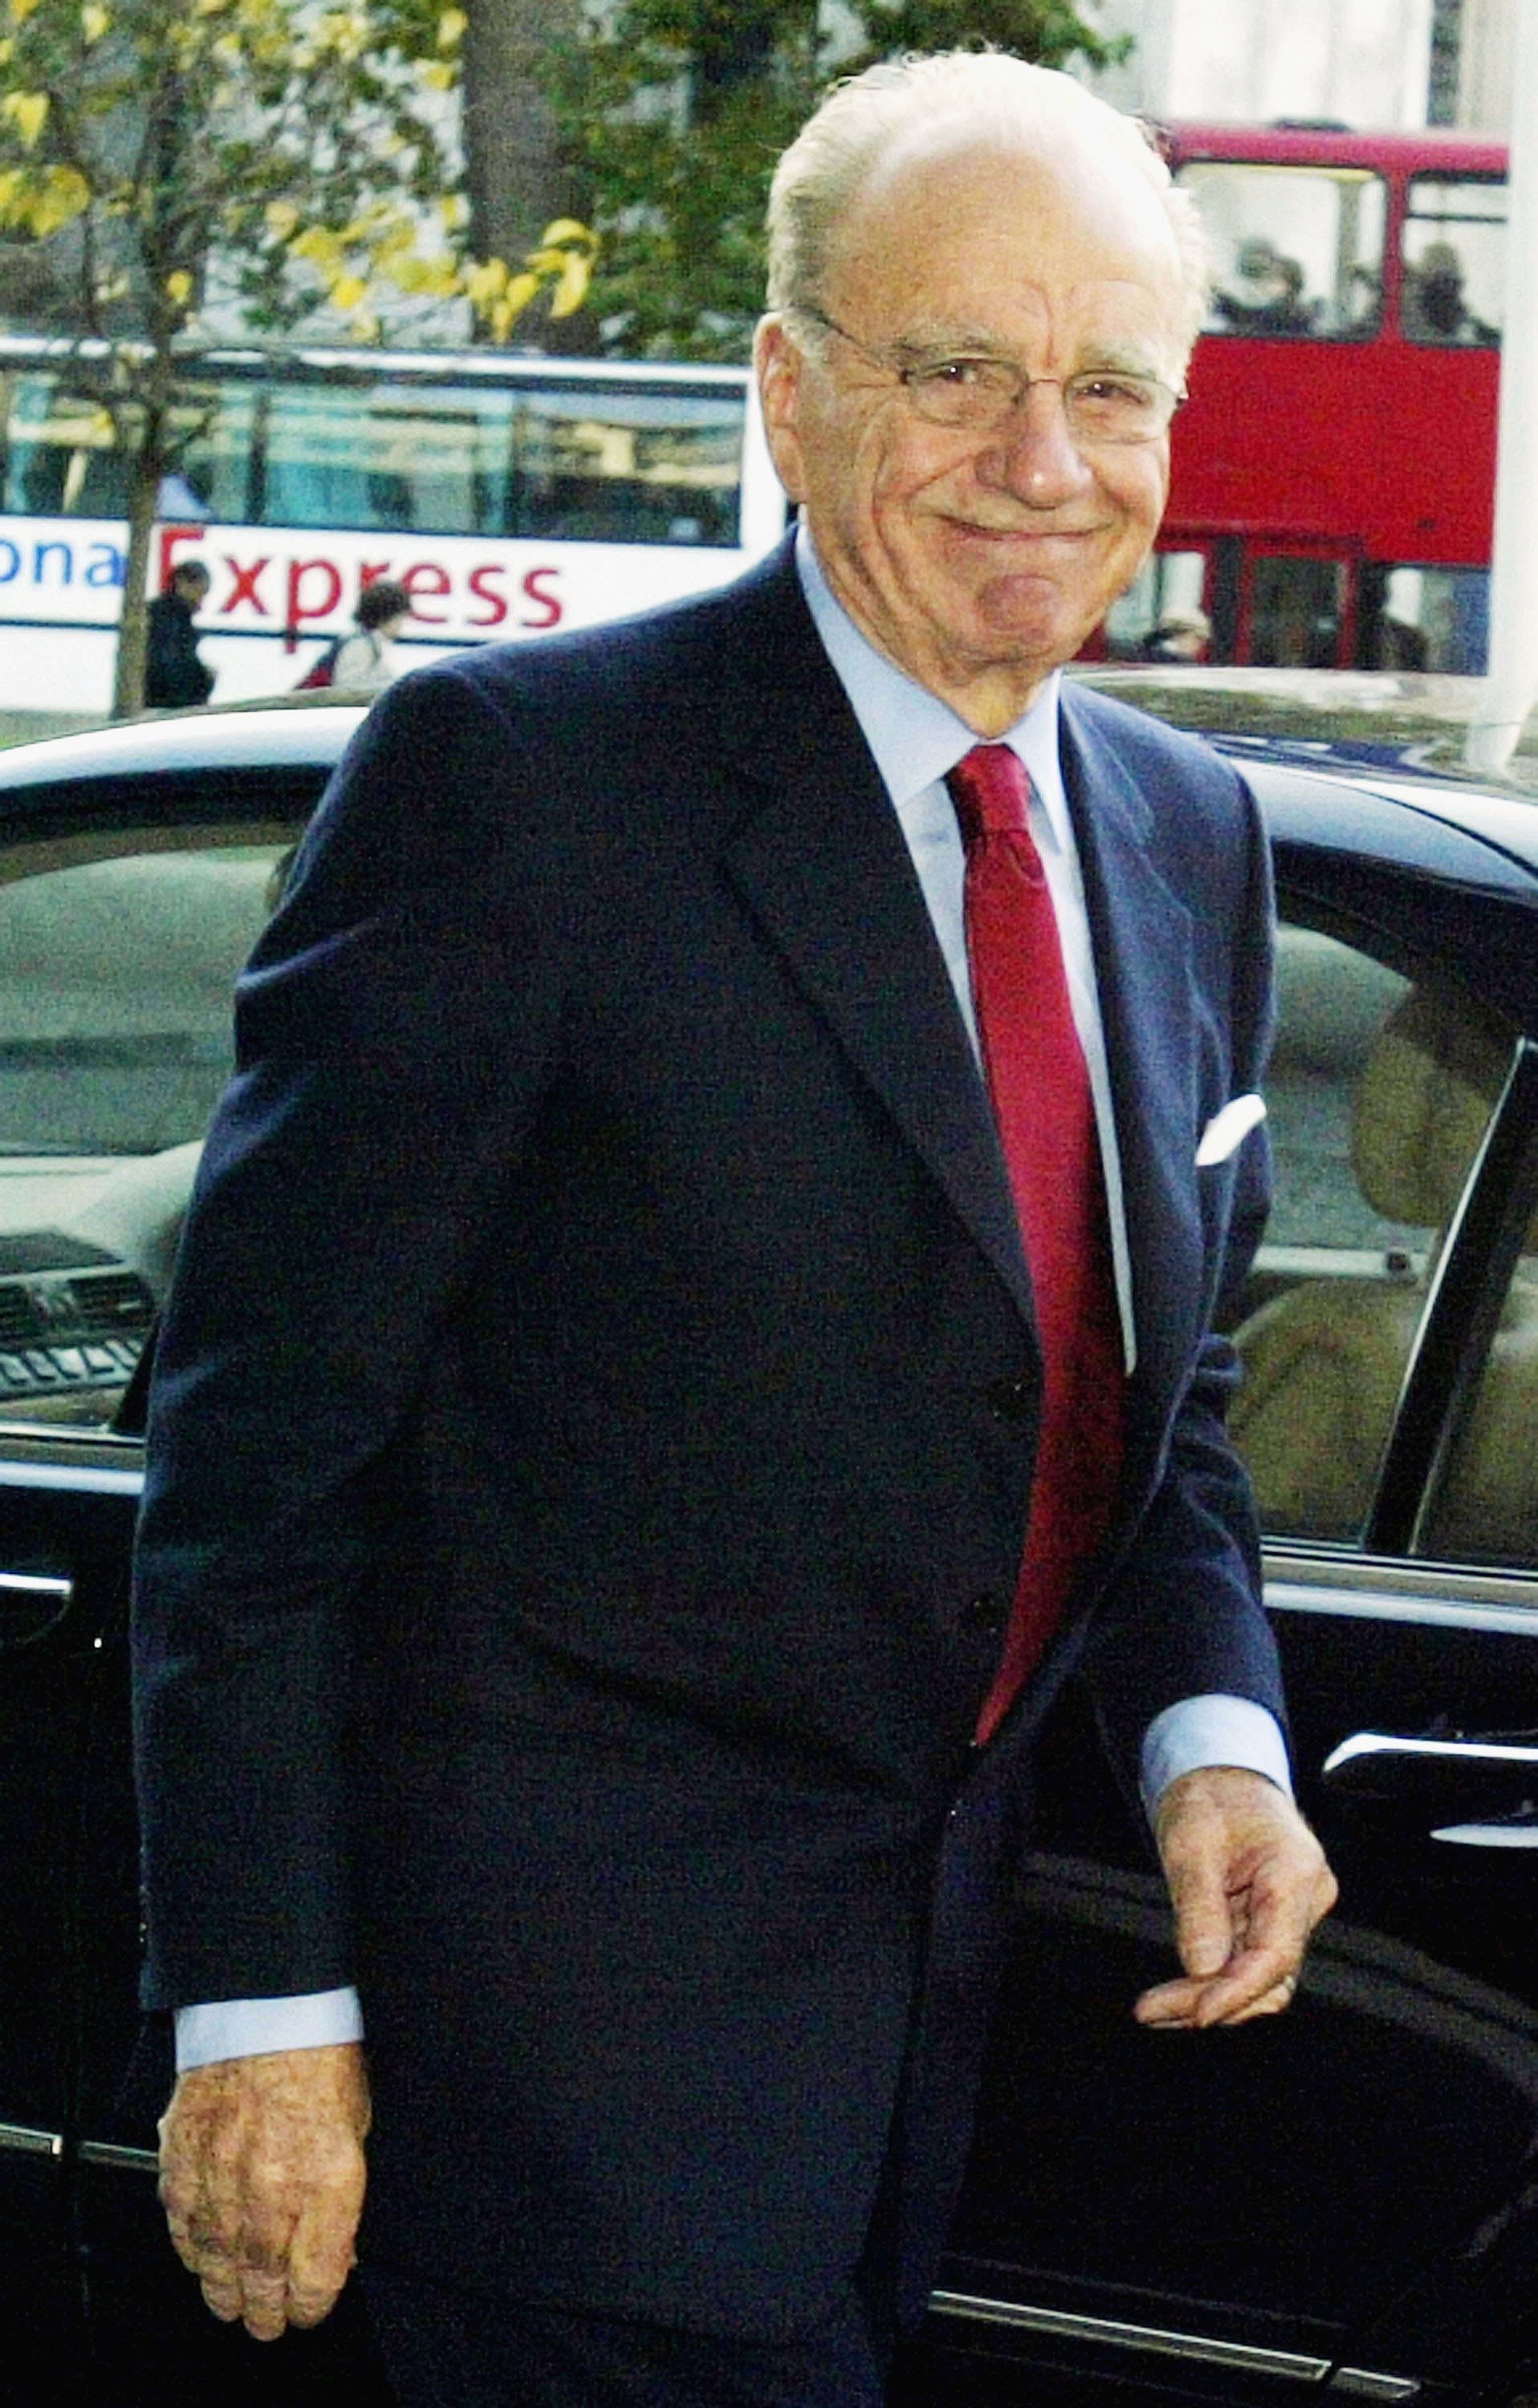 Closeup of Rupert Murdoch